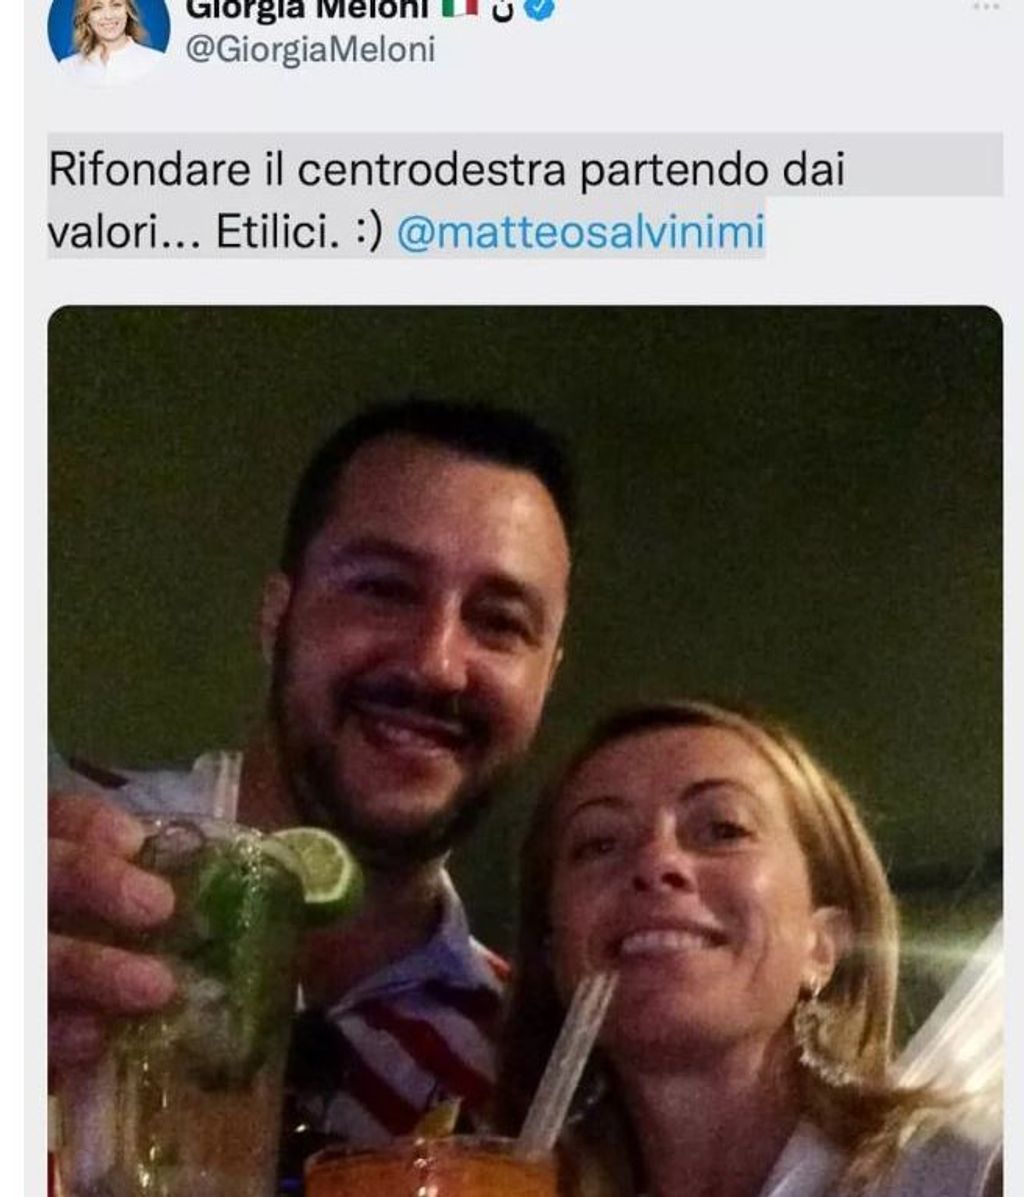 Matteo Salvini junto a Giorgia Meloni, que gobernarán Italia en coalición.